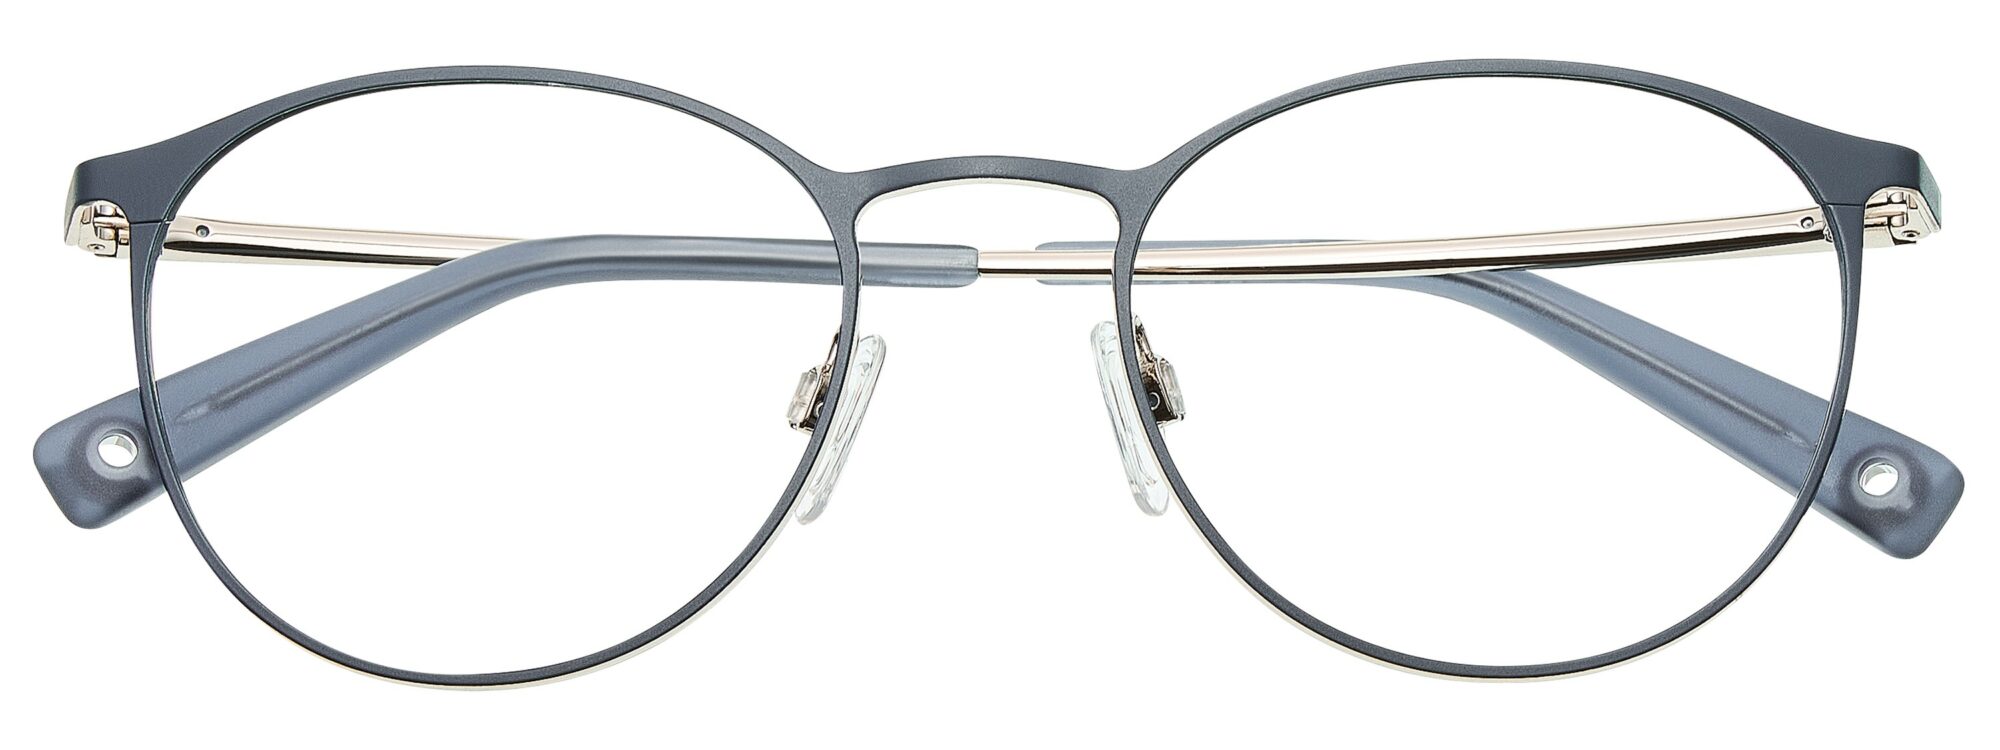 BRENDEL eyewear - 902391-70